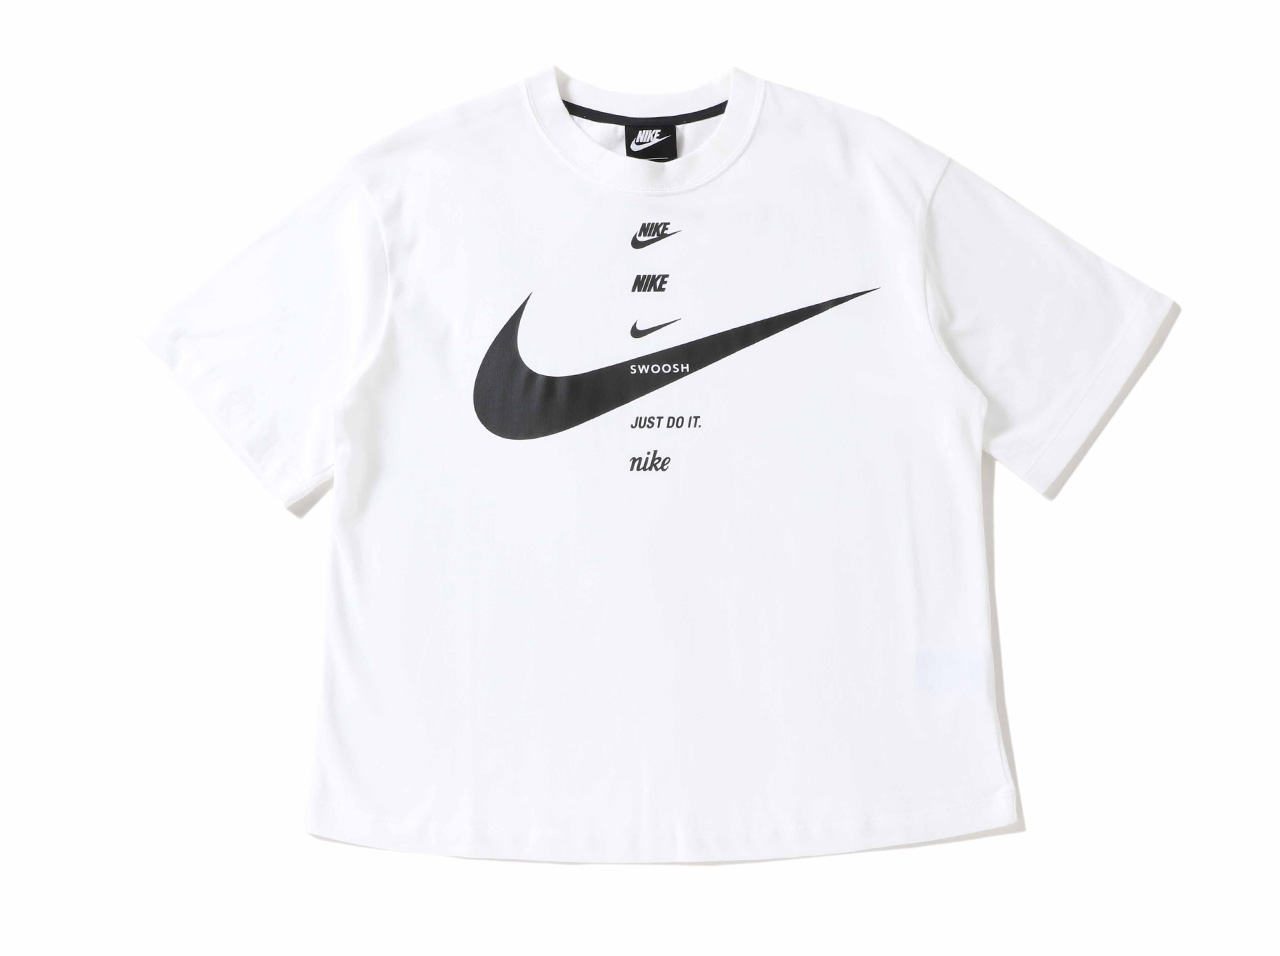 楽天市場 Nike Wmns Swoosh S S Top Cu56 100 ナイキ レディースファッション トップス Tシャツ スポーツウェア ストアレビュー記載でソックスプレゼント対象品 Figure